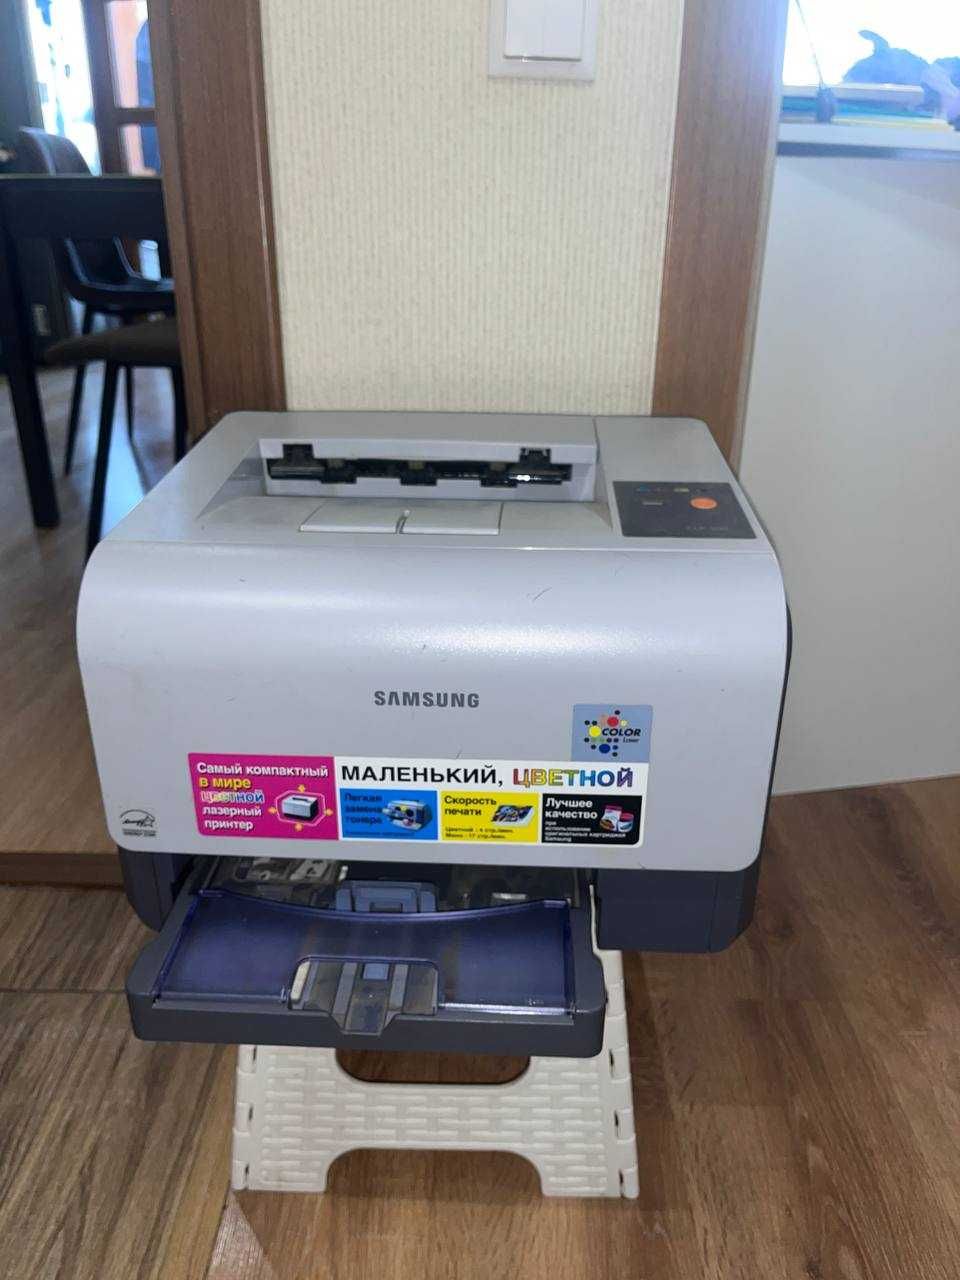 Цветной принтер Samsung